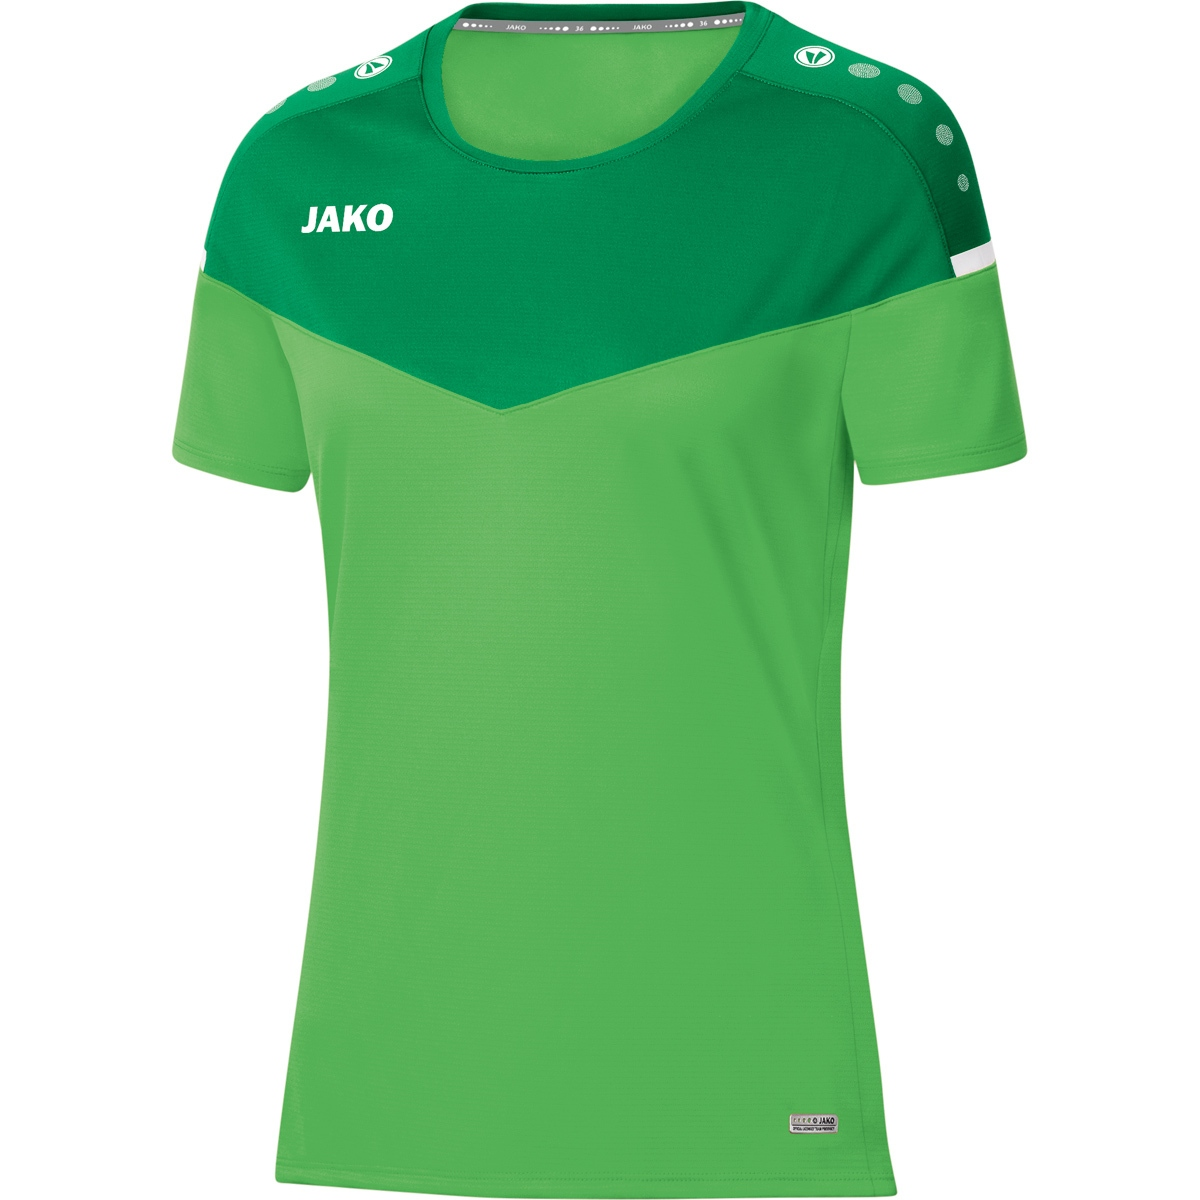 T-Shirt Damen, JAKO 6120 soft 2.0 Gr. green/sportgrün, 38, Champ